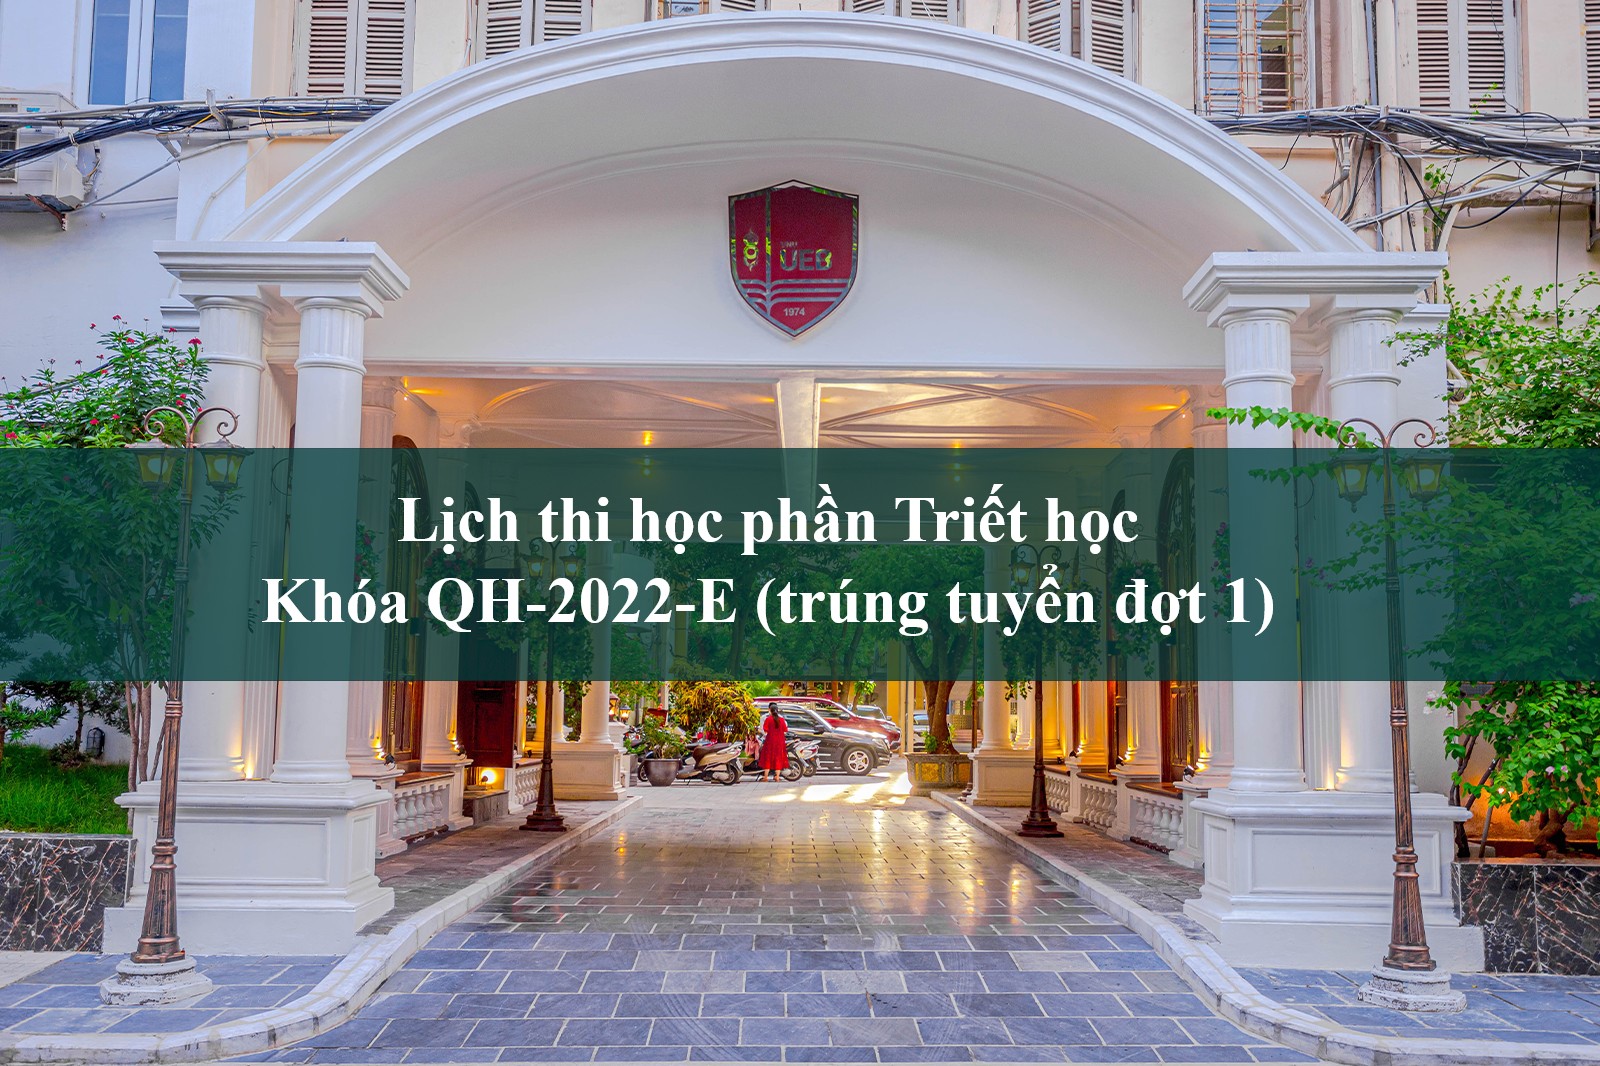 Lịch thi học phần Triết học Khóa QH-2022-E (trúng tuyển đợt 1)